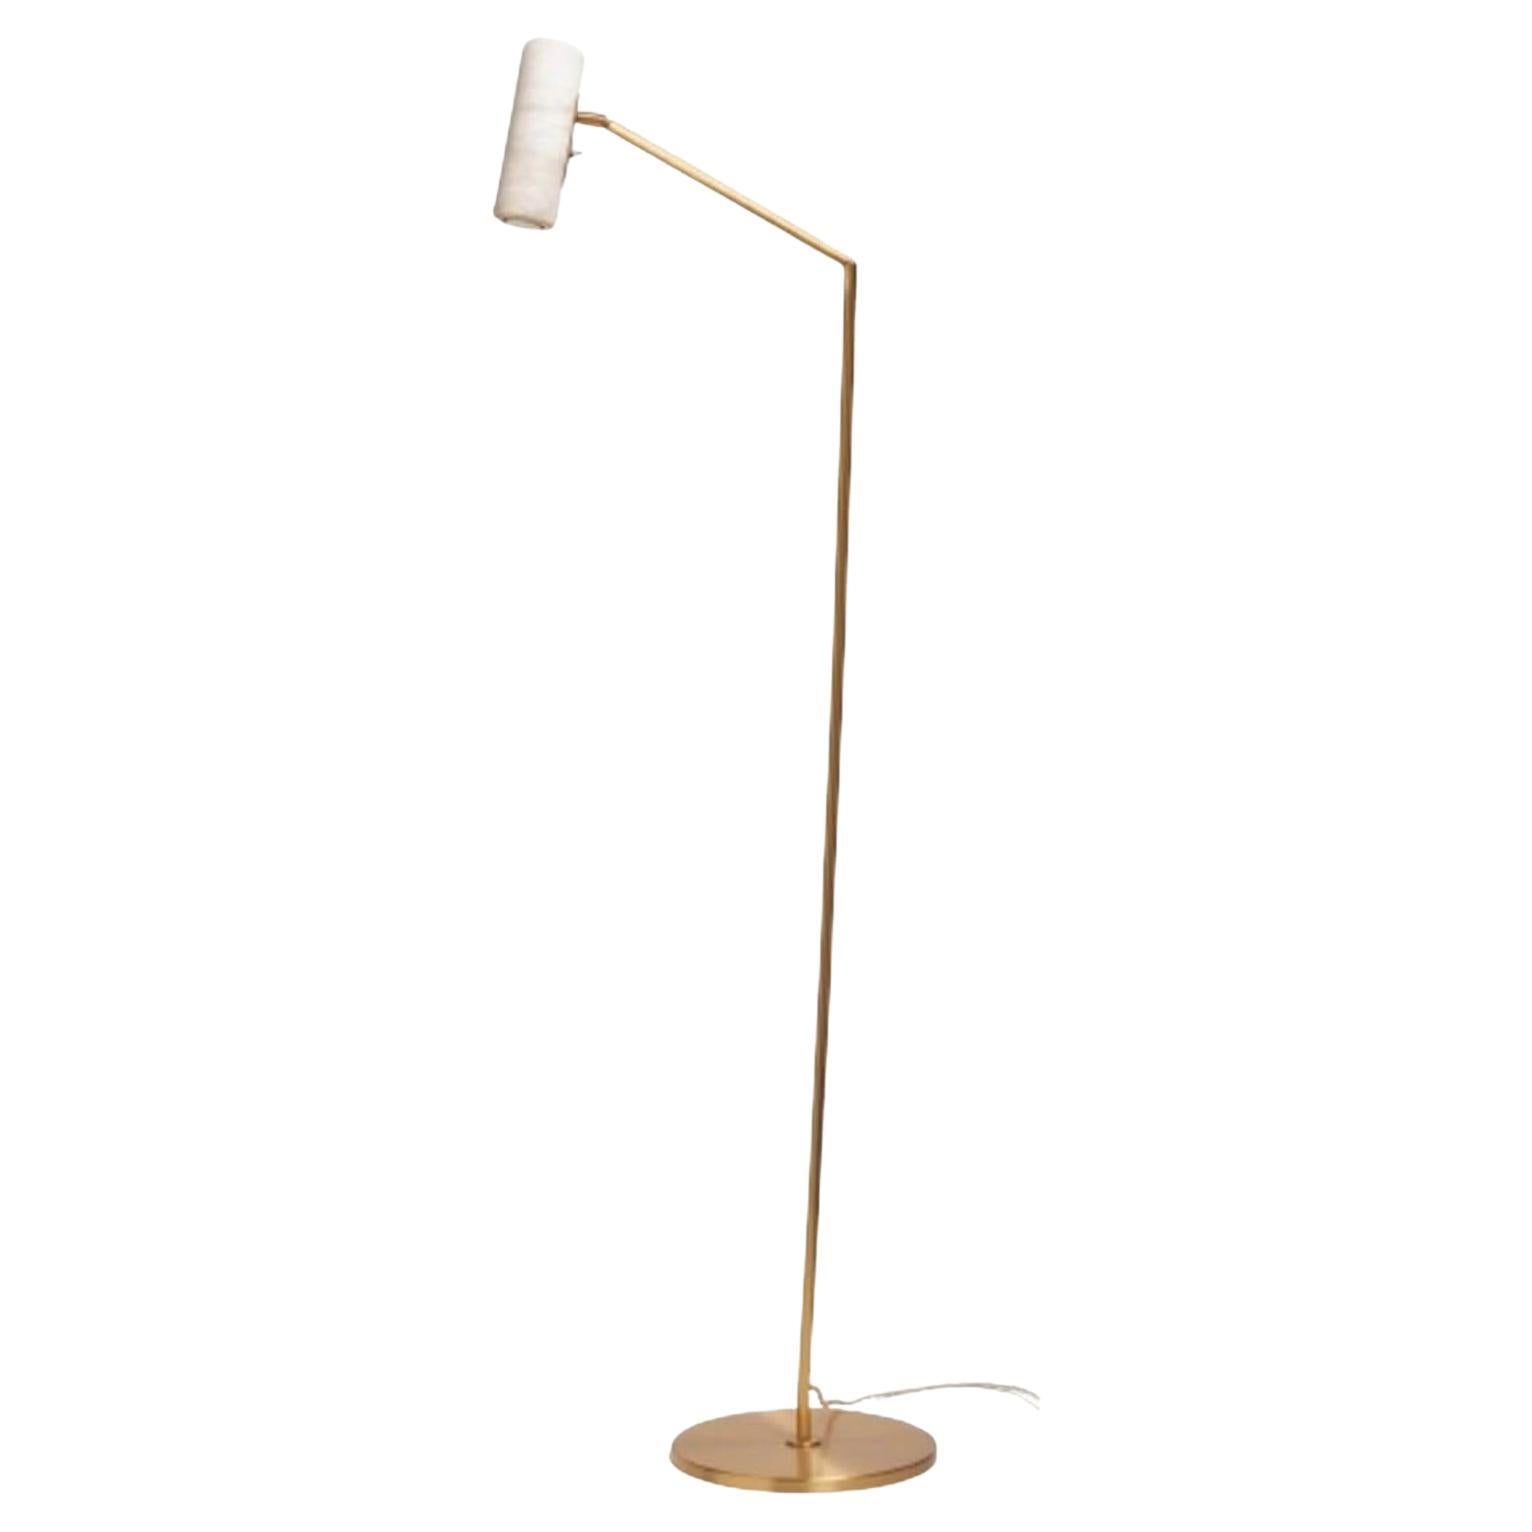 Elegant Italian Satin Brass and Alabaster Floor Lamp "Flamingo"